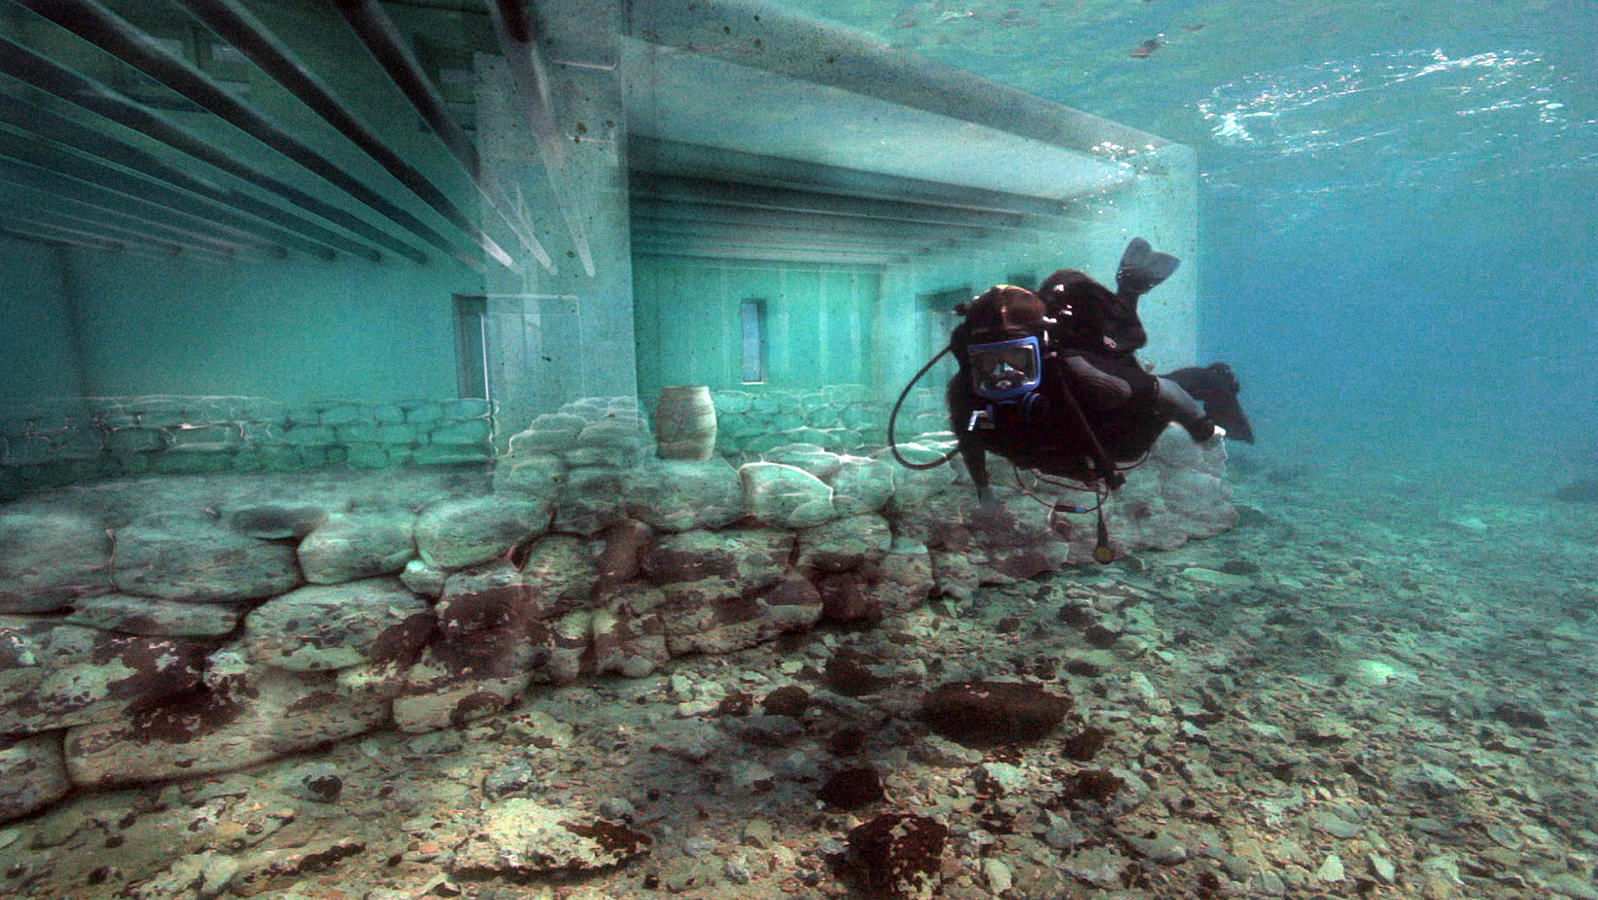 Versunkene Stadt Pavlopetri oder Atlantis: 5,000 Jahre alte Stadt in Griechenland entdeckt 2